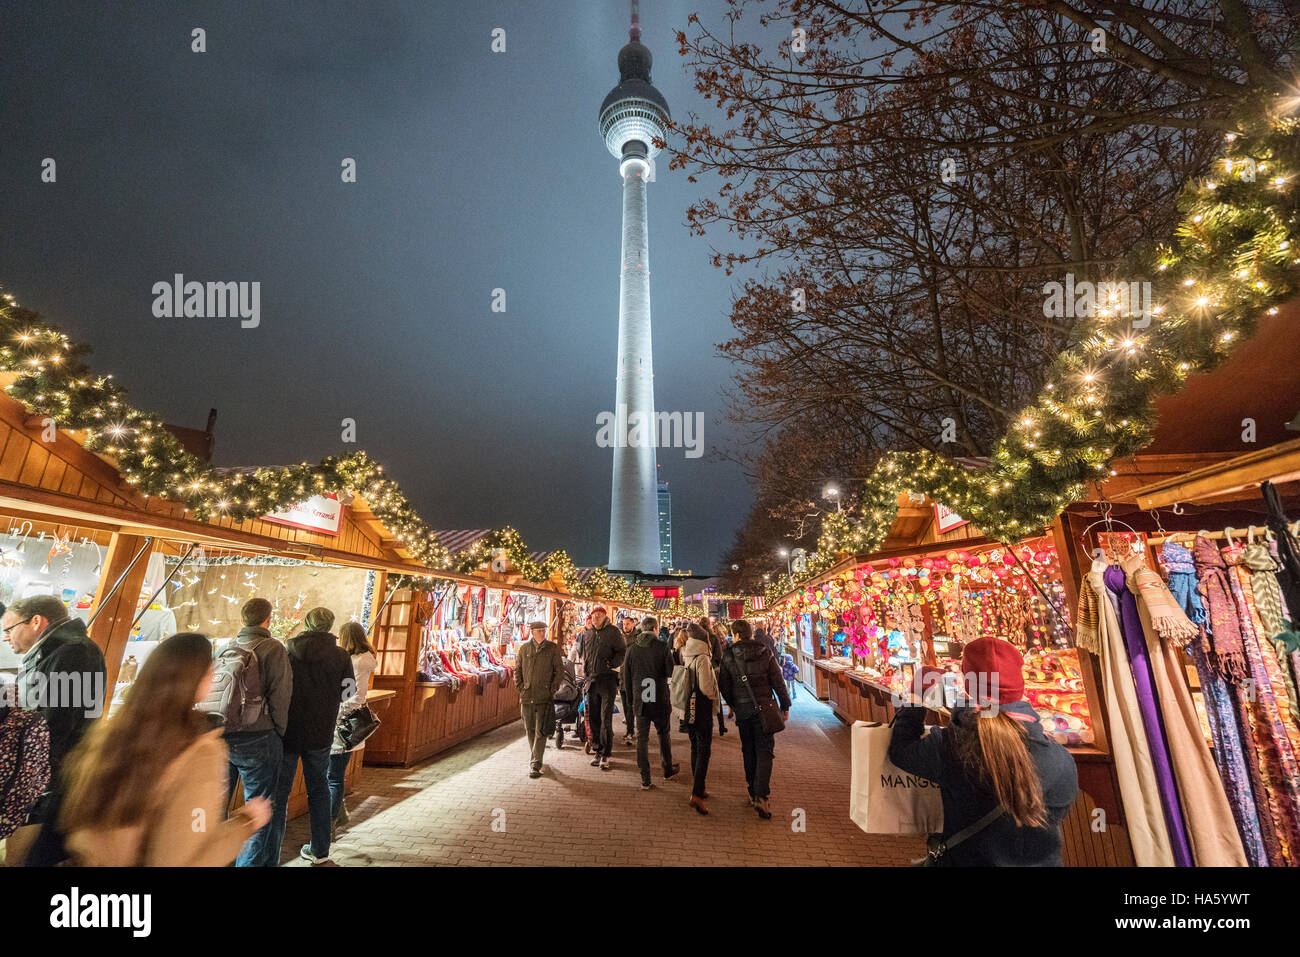 Vue de nuit sur le marché de Noël traditionnel et tour de télévision de l'Alexanderplatz à Mitte Berlin Allemagne 2016 Banque D'Images